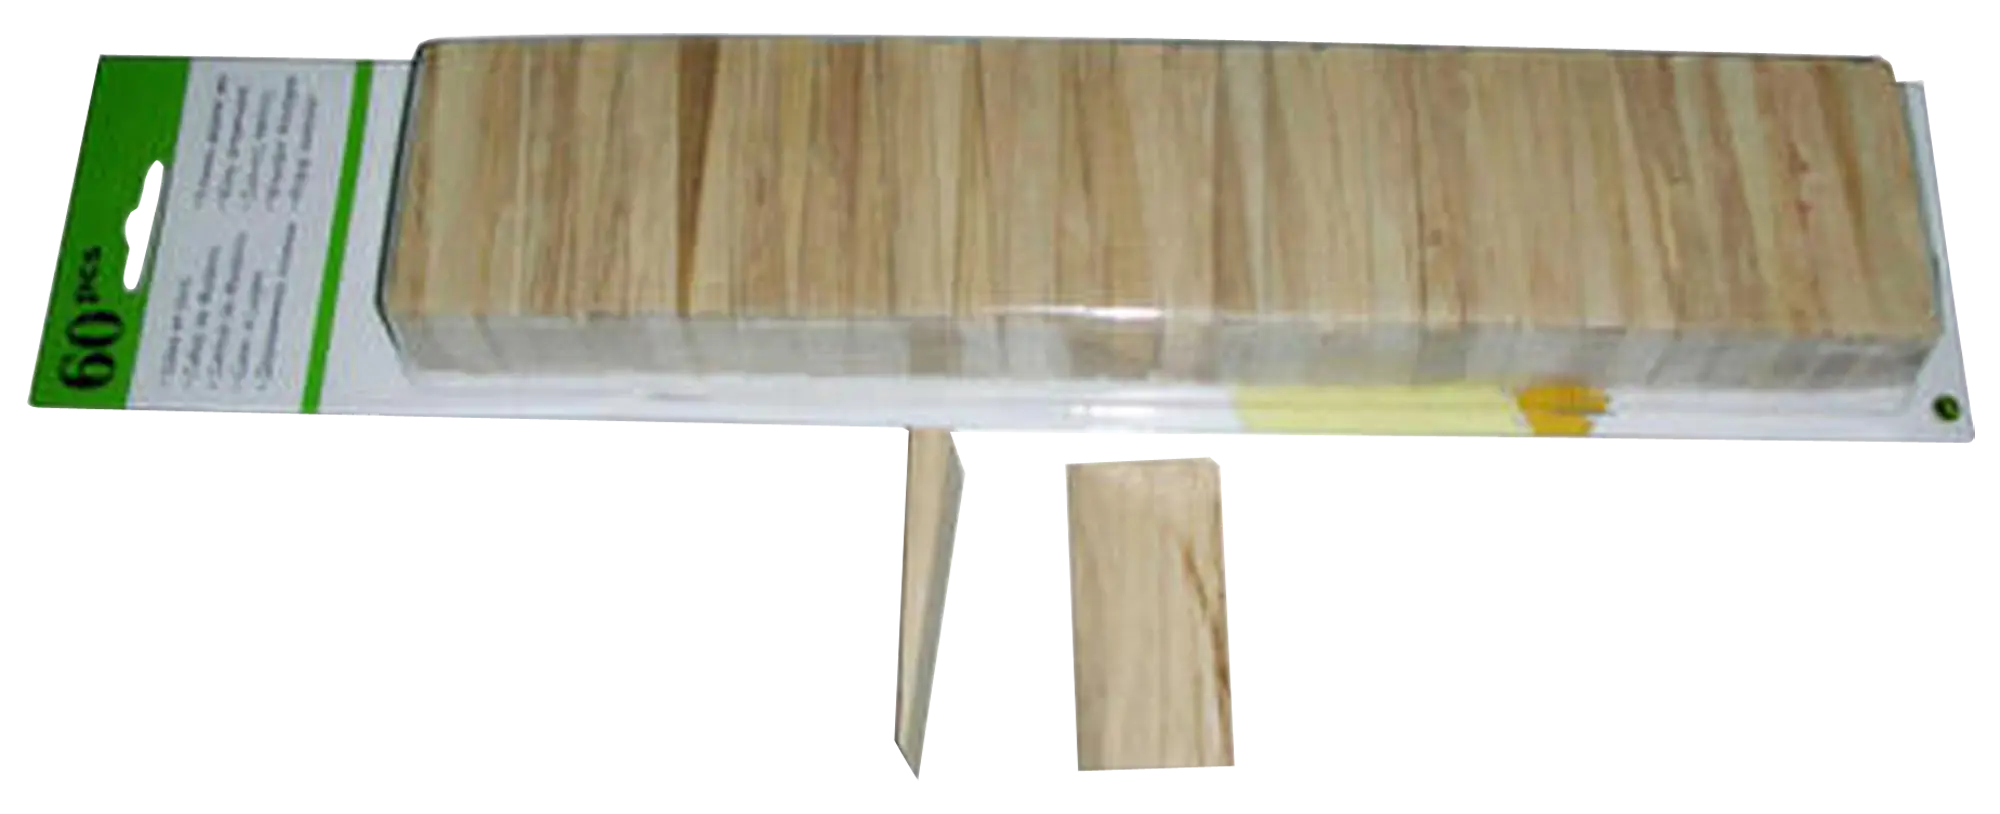 exhaustivo Soberano El principio Pack 60 cuñas de madera para instalación de suelo laminado o de madera |  Leroy Merlin